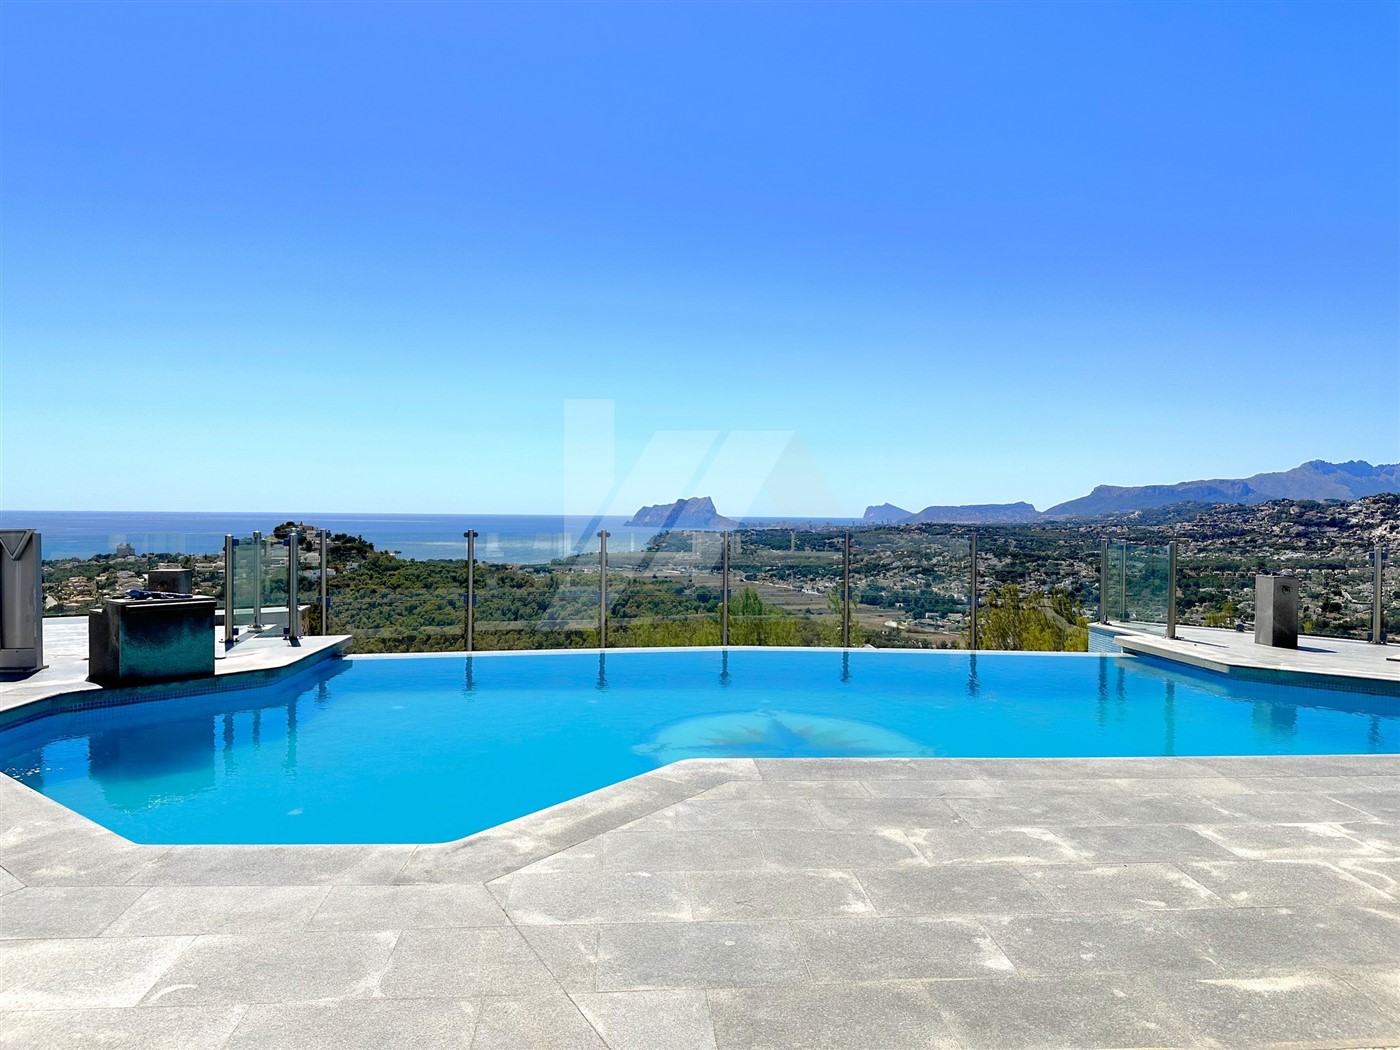 Villa avec vue panoramique sur la mer à vendre à Moraira, Costa Blanca.